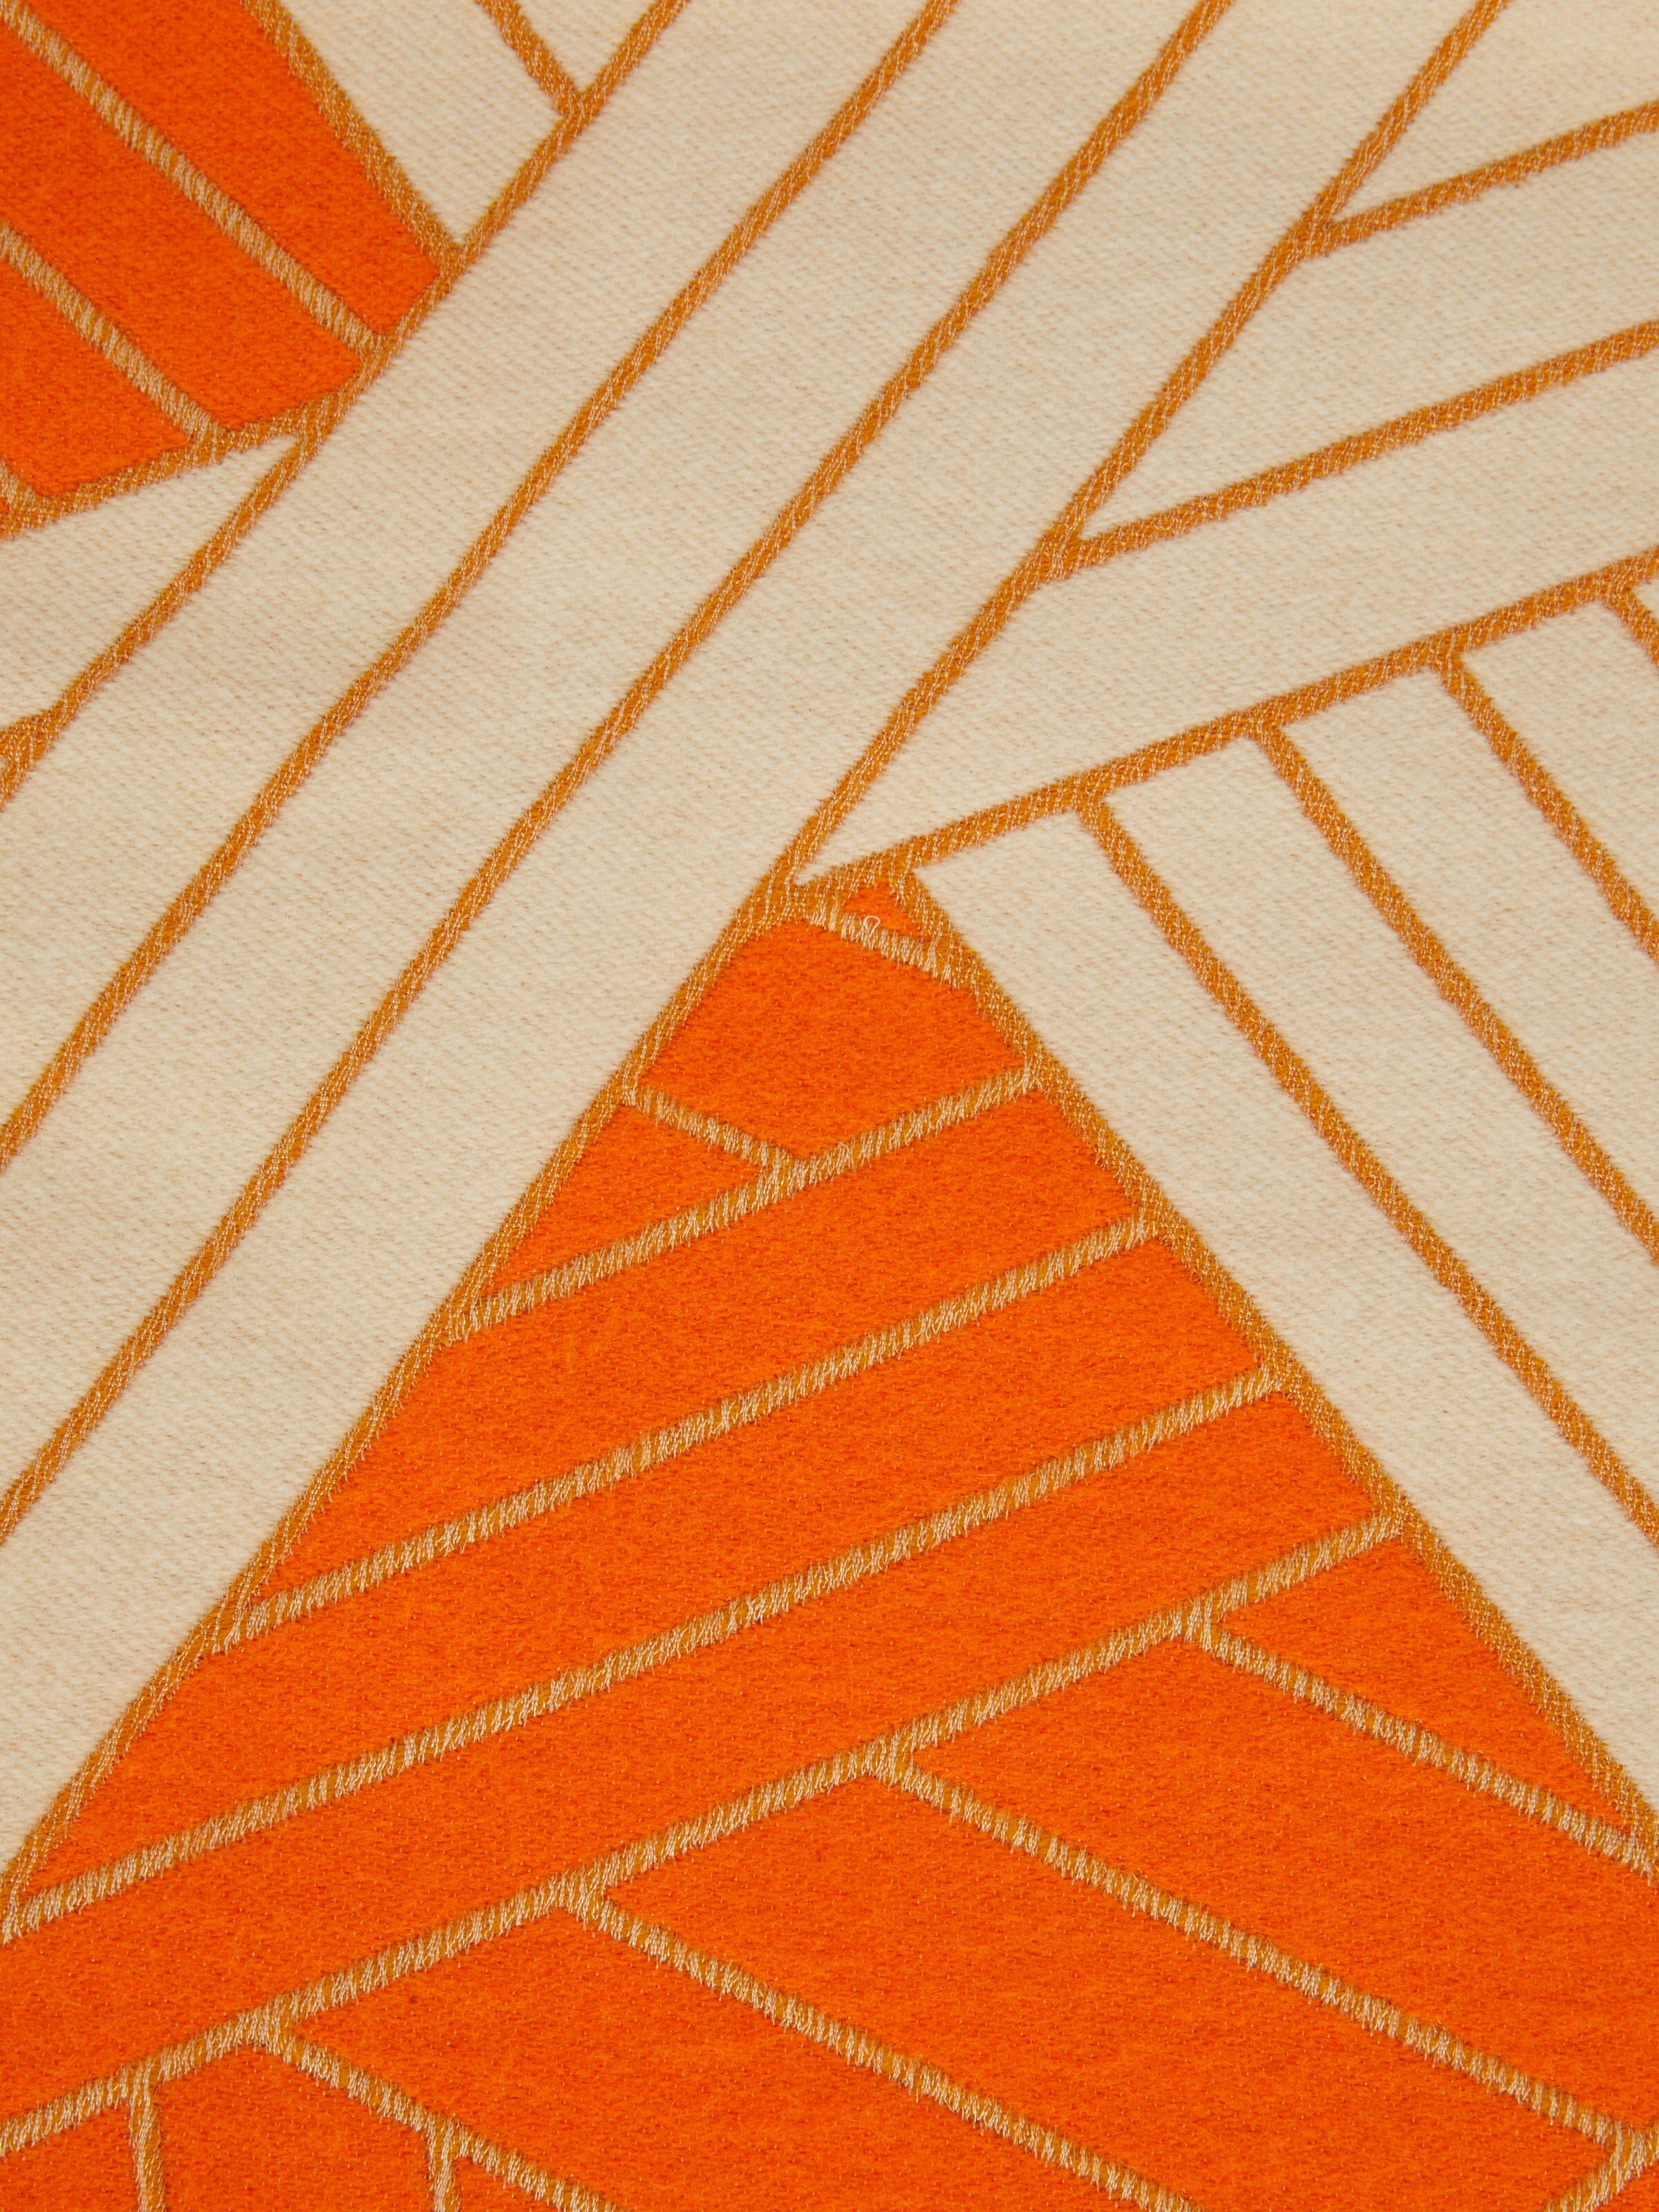 Manta Nastri 135×190 cm en lana, cachemira y seda, Naranja - 3